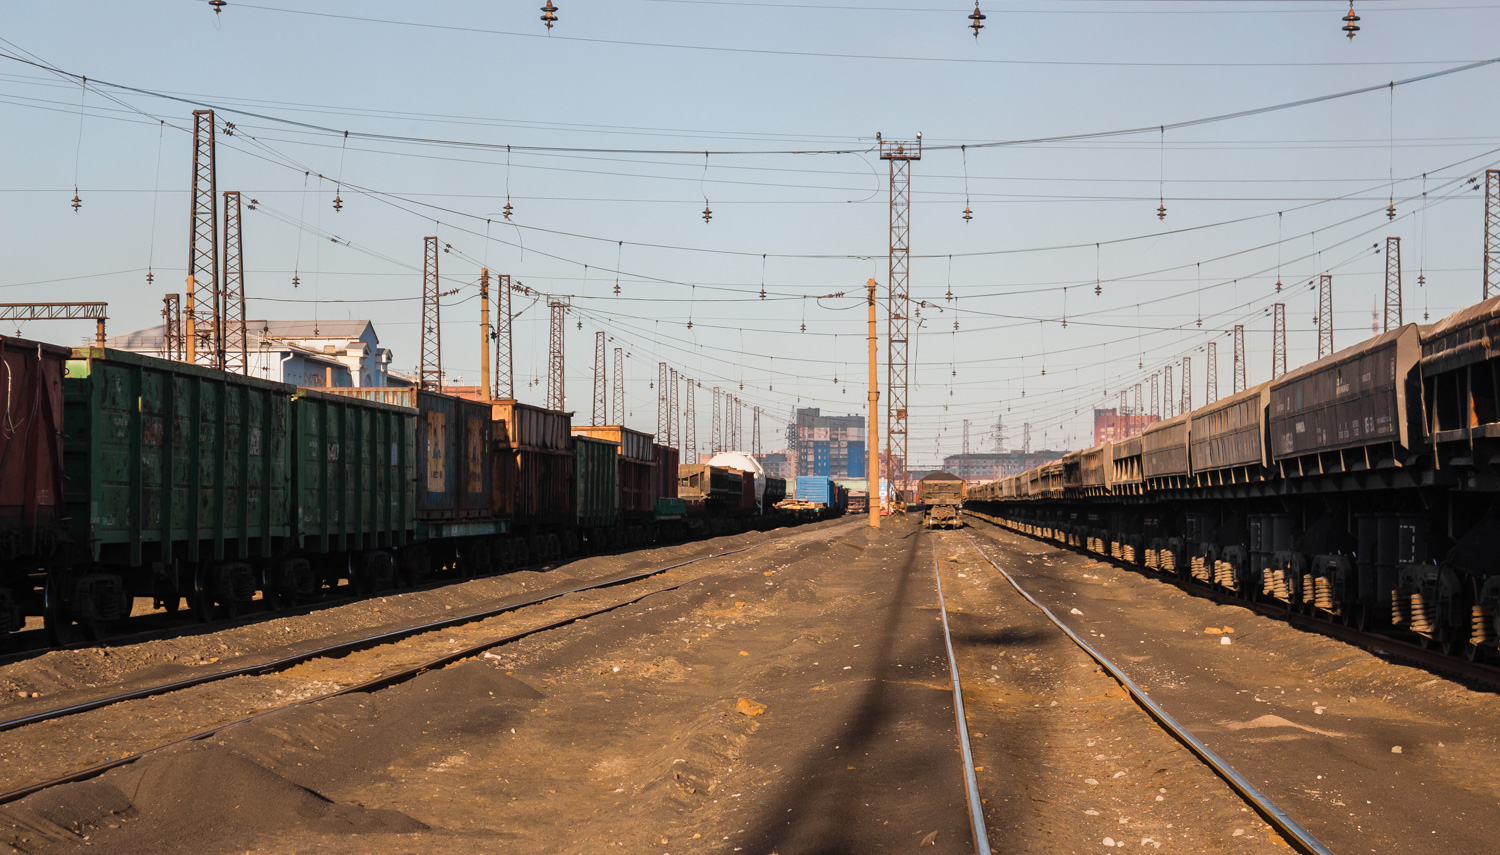 Норильская железная дорога (ПАО "ГМК "Норникель") — Разные фотографии